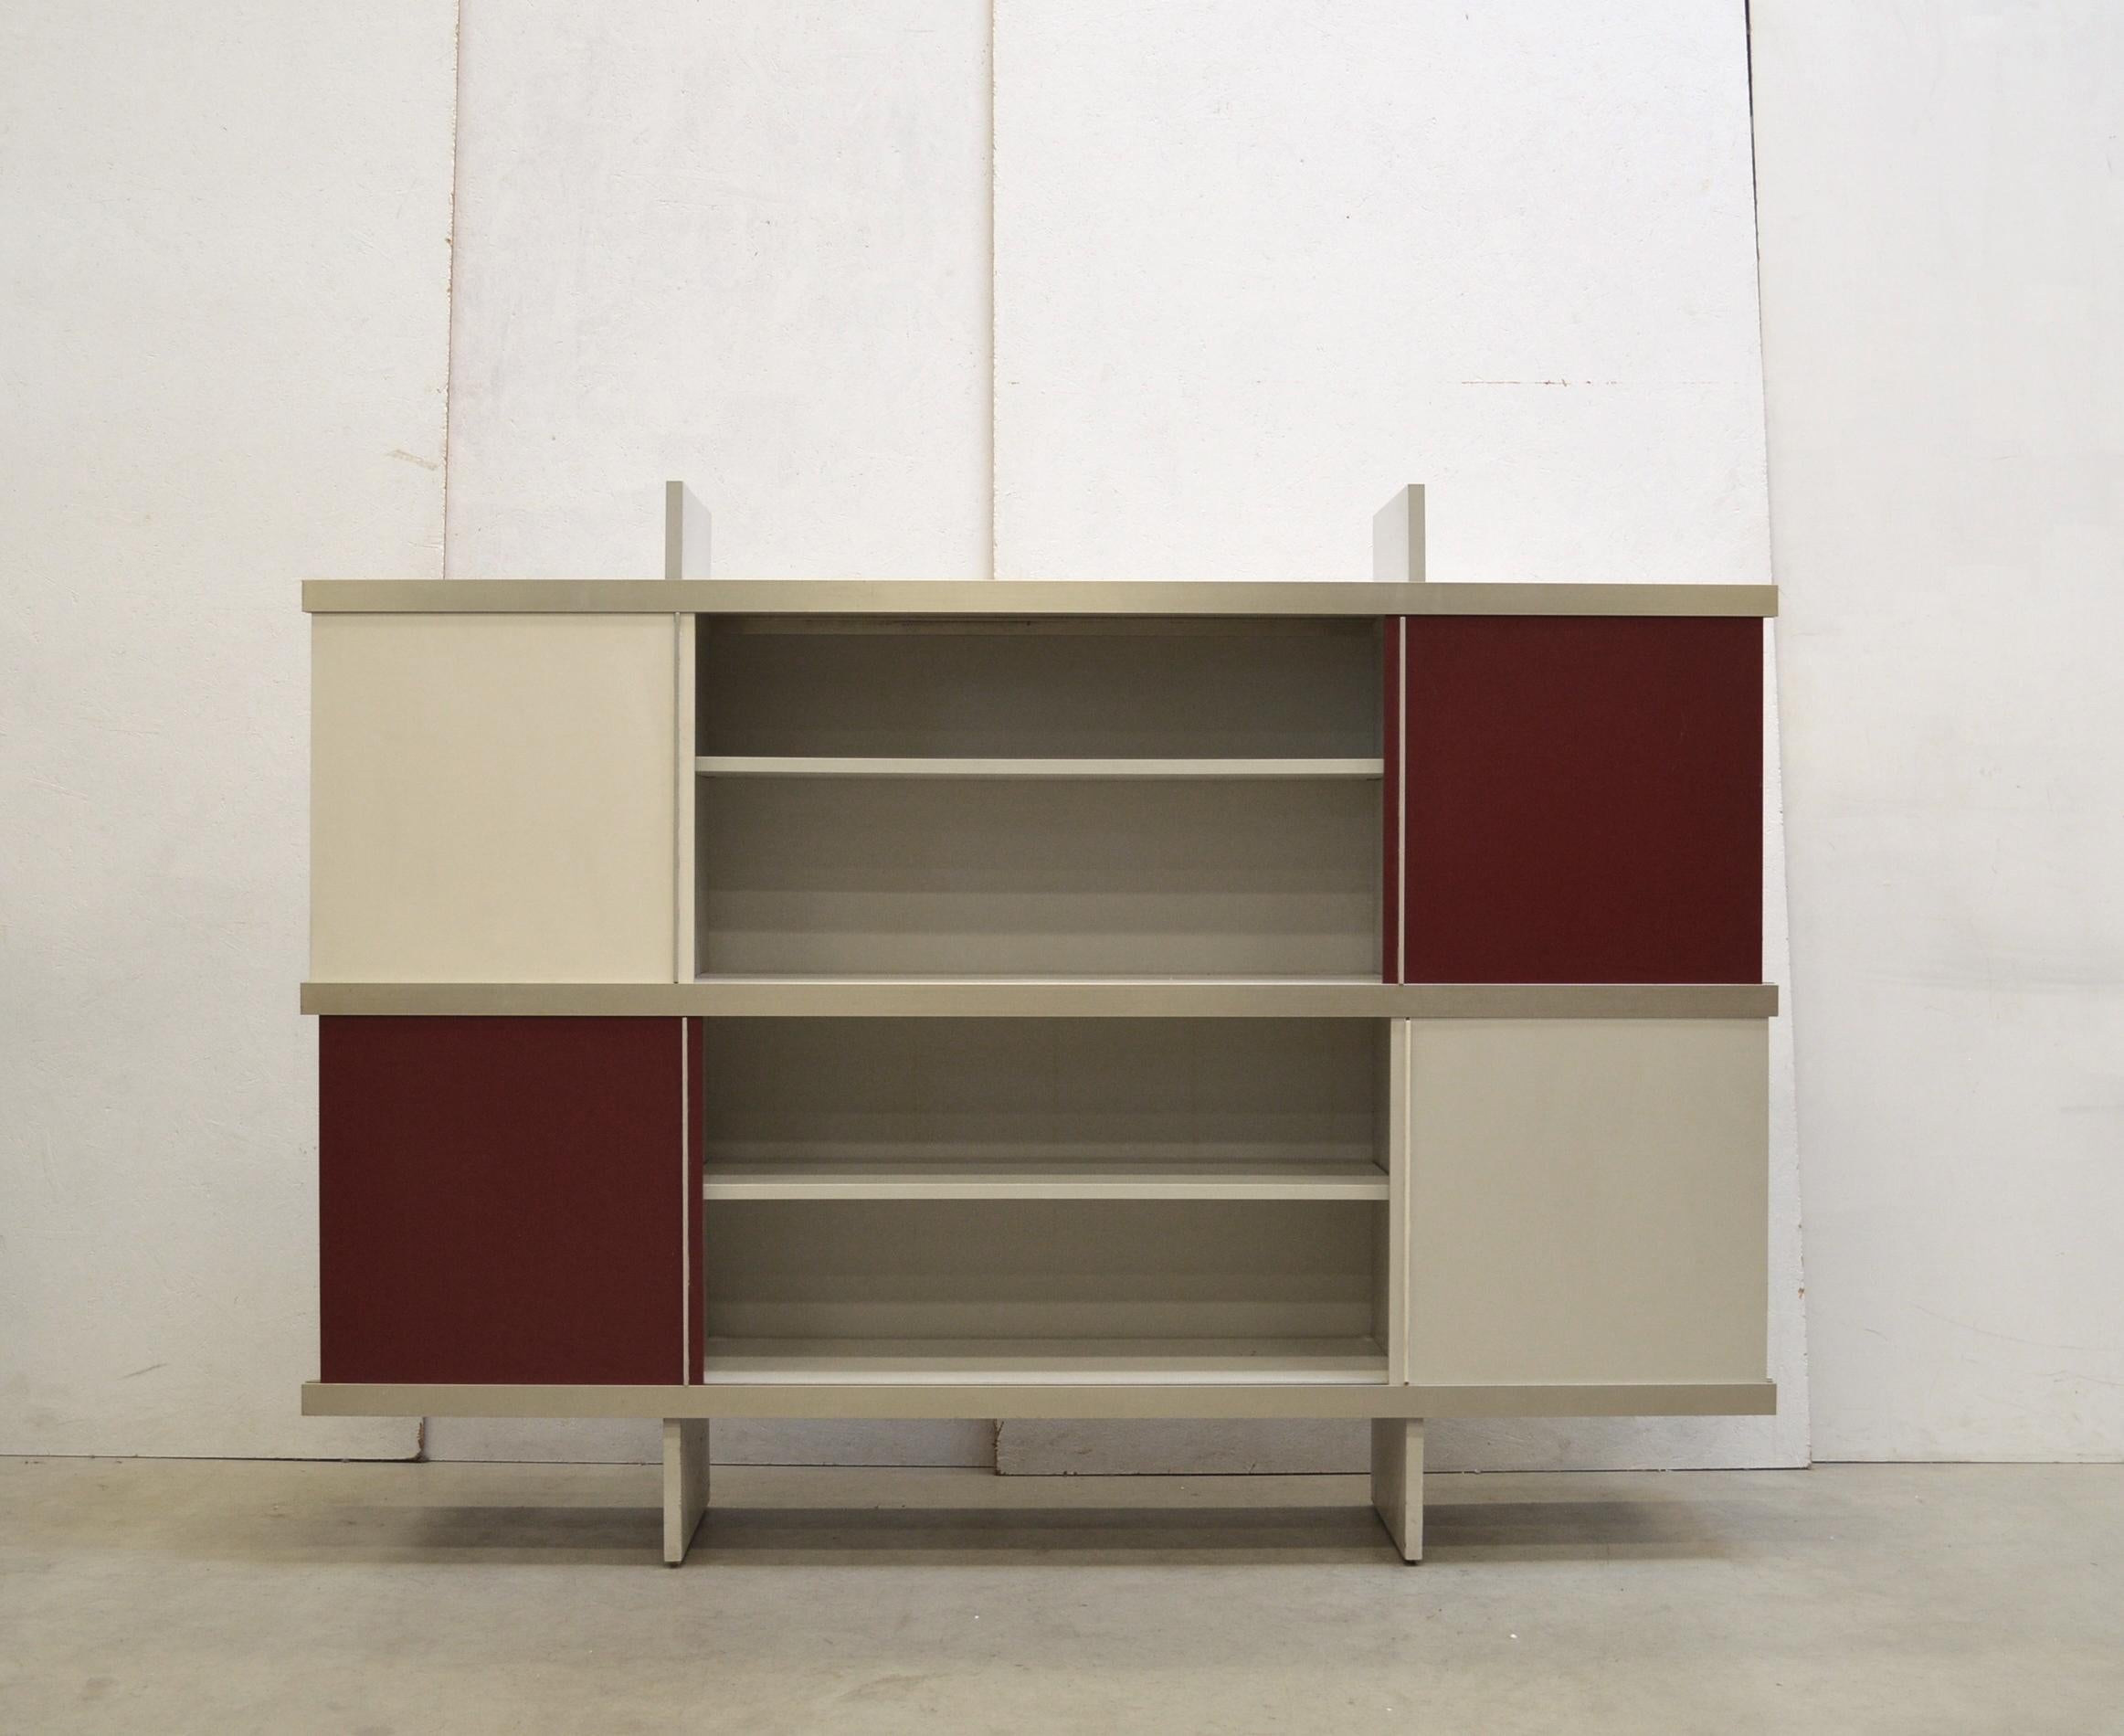 Ce rare meuble en aluminium de la série Multiuse, qui peut également être utilisé comme bibliothèque, a été conçu par Angelo Mangiarotti en 1965 et a été produit par Poltronova, Italie.

L'armoire comporte 4 portes coulissantes et est disponible